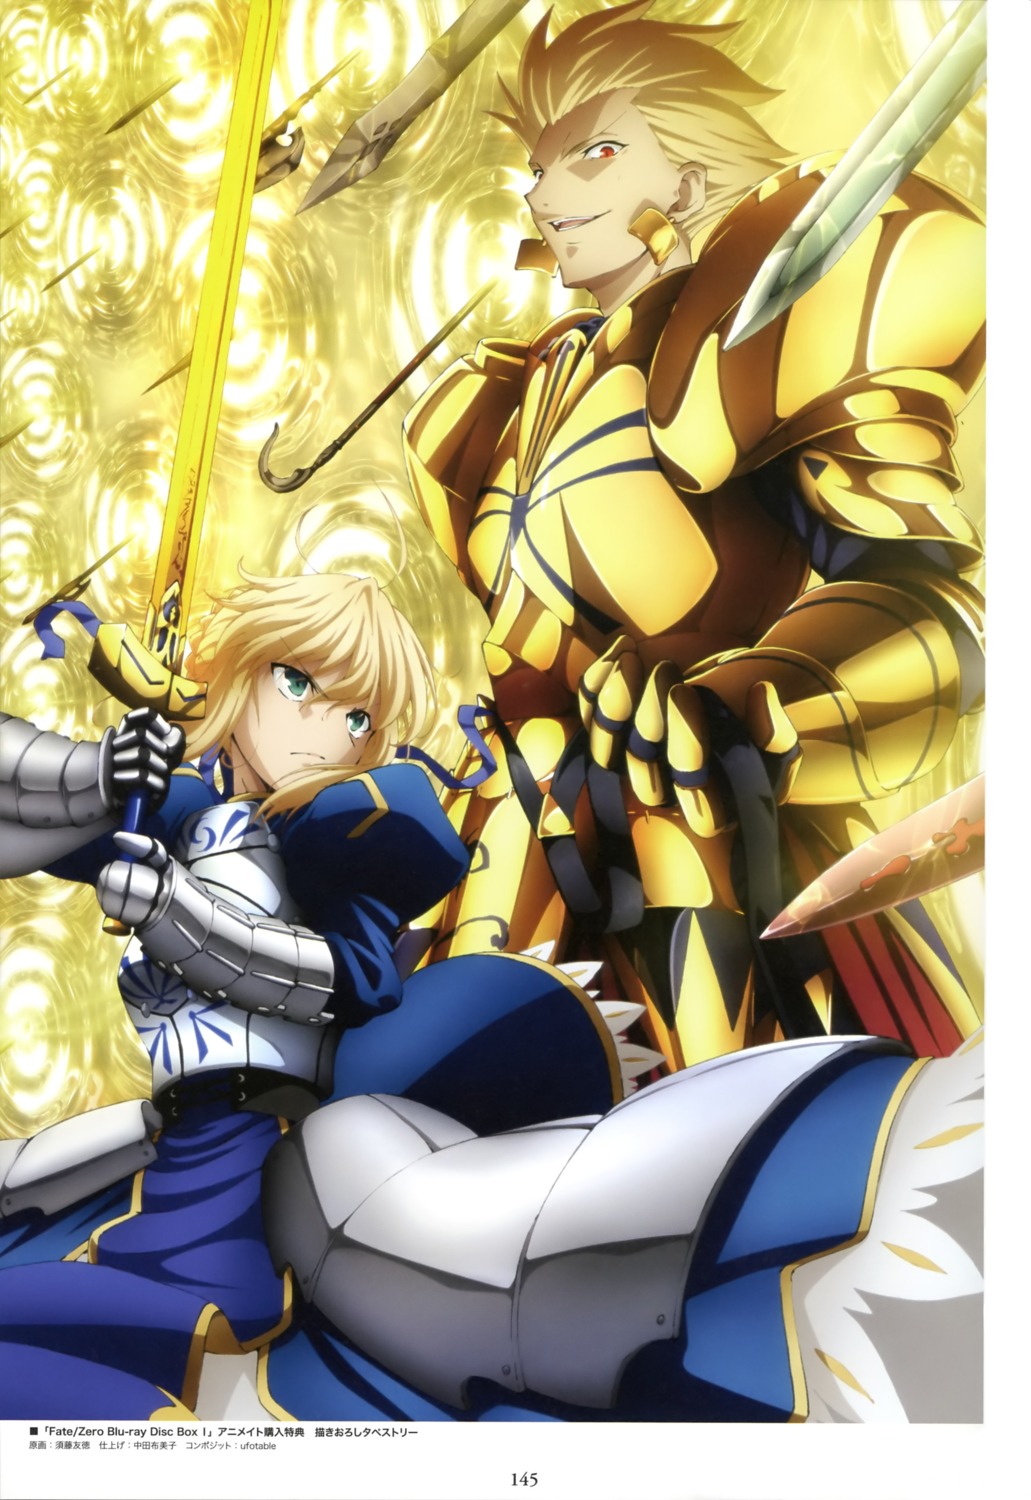 Sudou Tomonori Fate Stay Night Fate Zero Gilgamesh Fsn Saber Armor Sword 2336 Yande Re